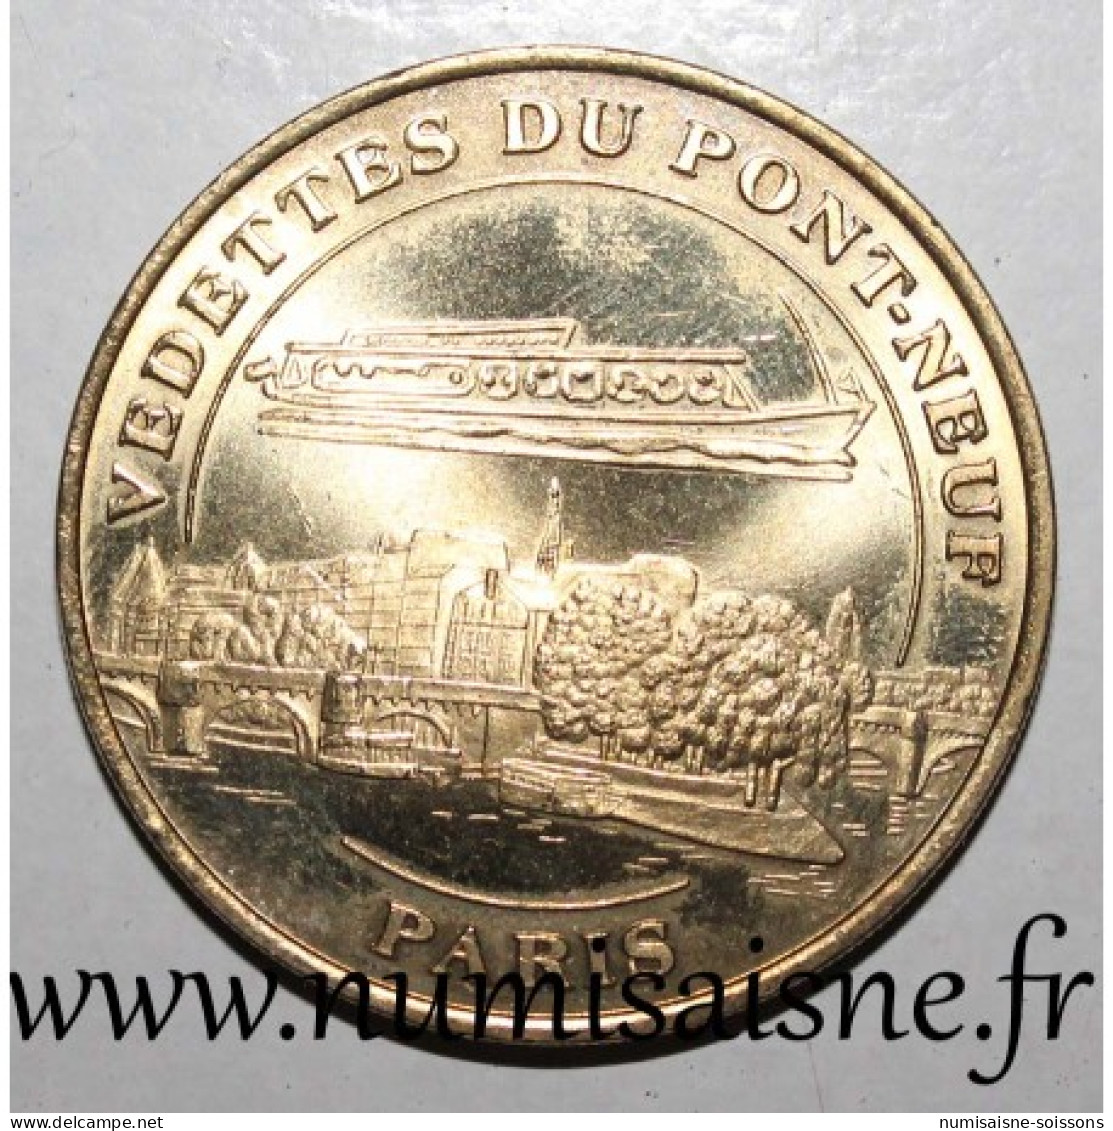 75 - PARIS - VEDETTES DU PONT NEUF - MDP - 2004 - 2004